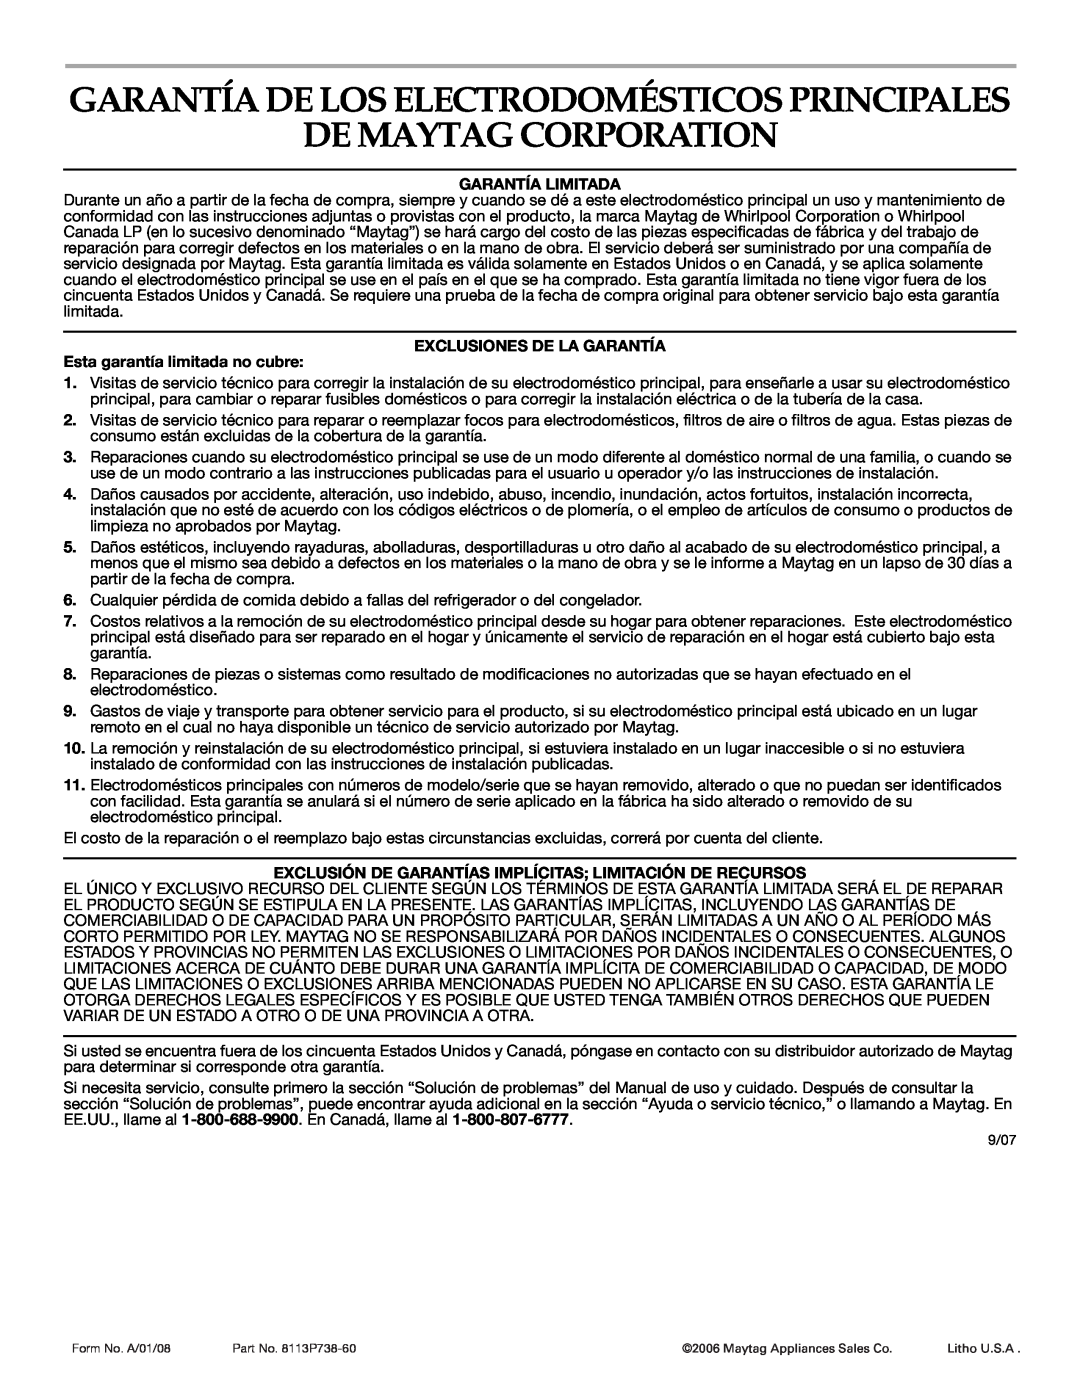 Maytag MER5875RAF manual De Maytag Corporation, Garantía De Los Electrodomésticos Principales, Garantía Limitada 